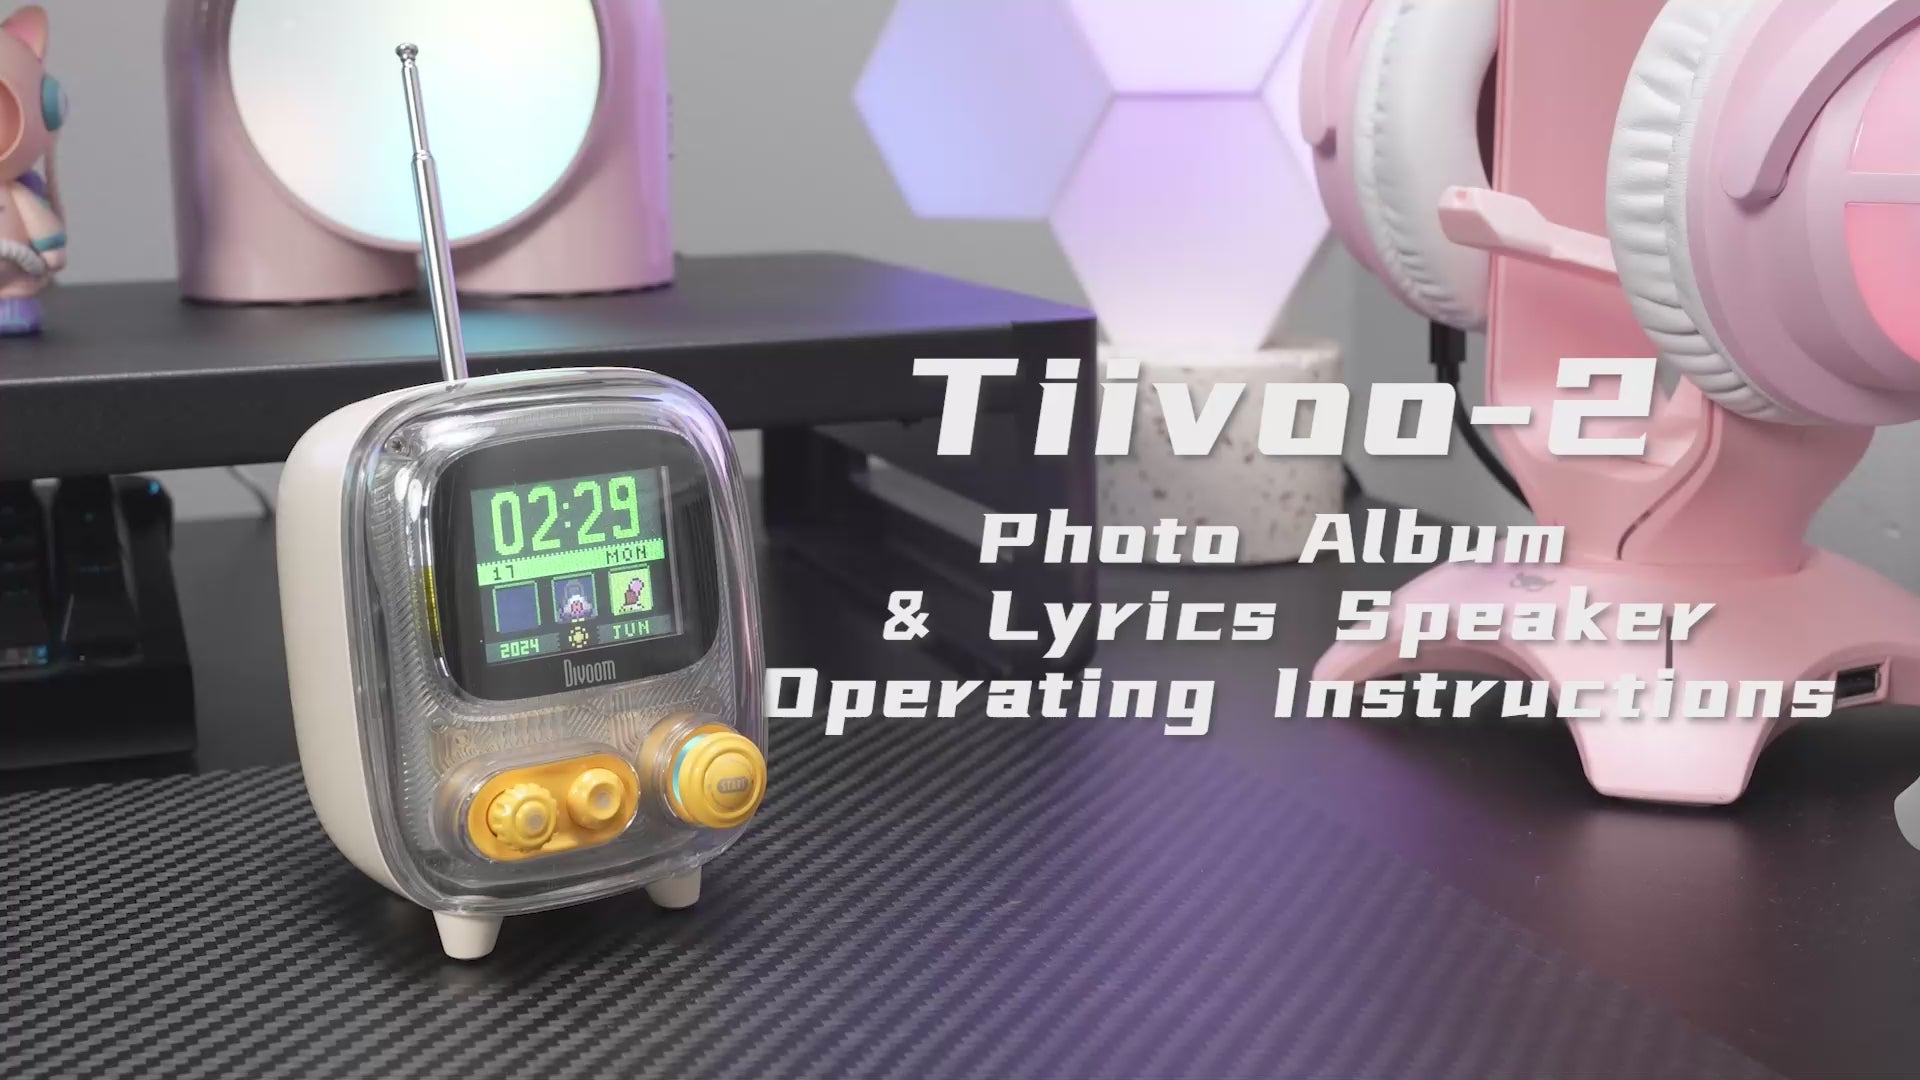 Divoom Tiivoo-2 Photo Album & Lyrics Speaker